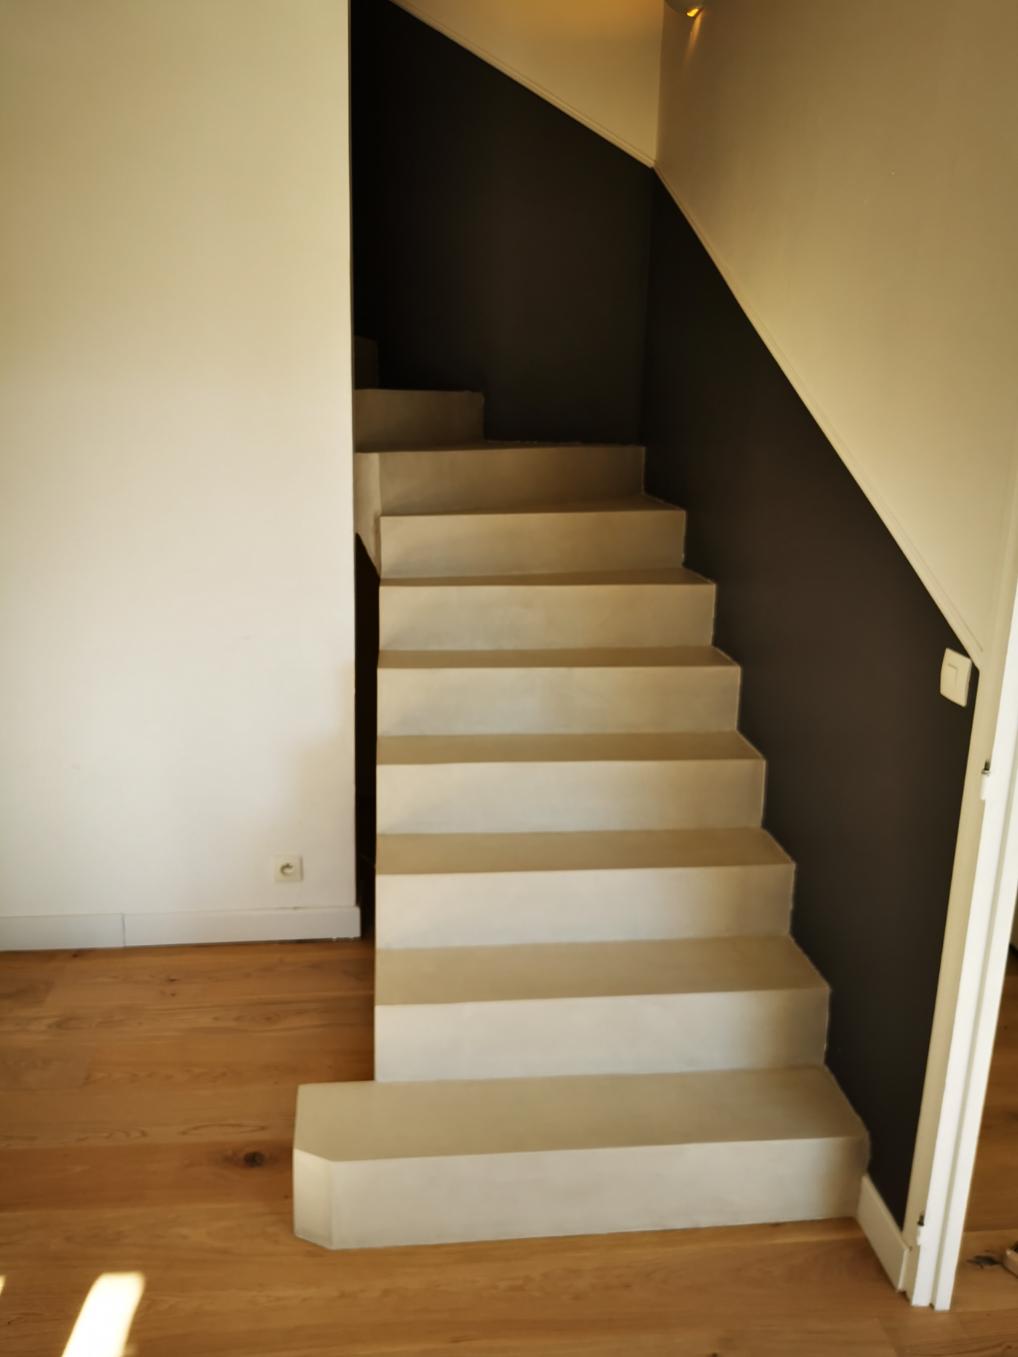 Béton ciré couleur corde qui est proche d'un beige clair sur un escalier dans une maison en rénovation